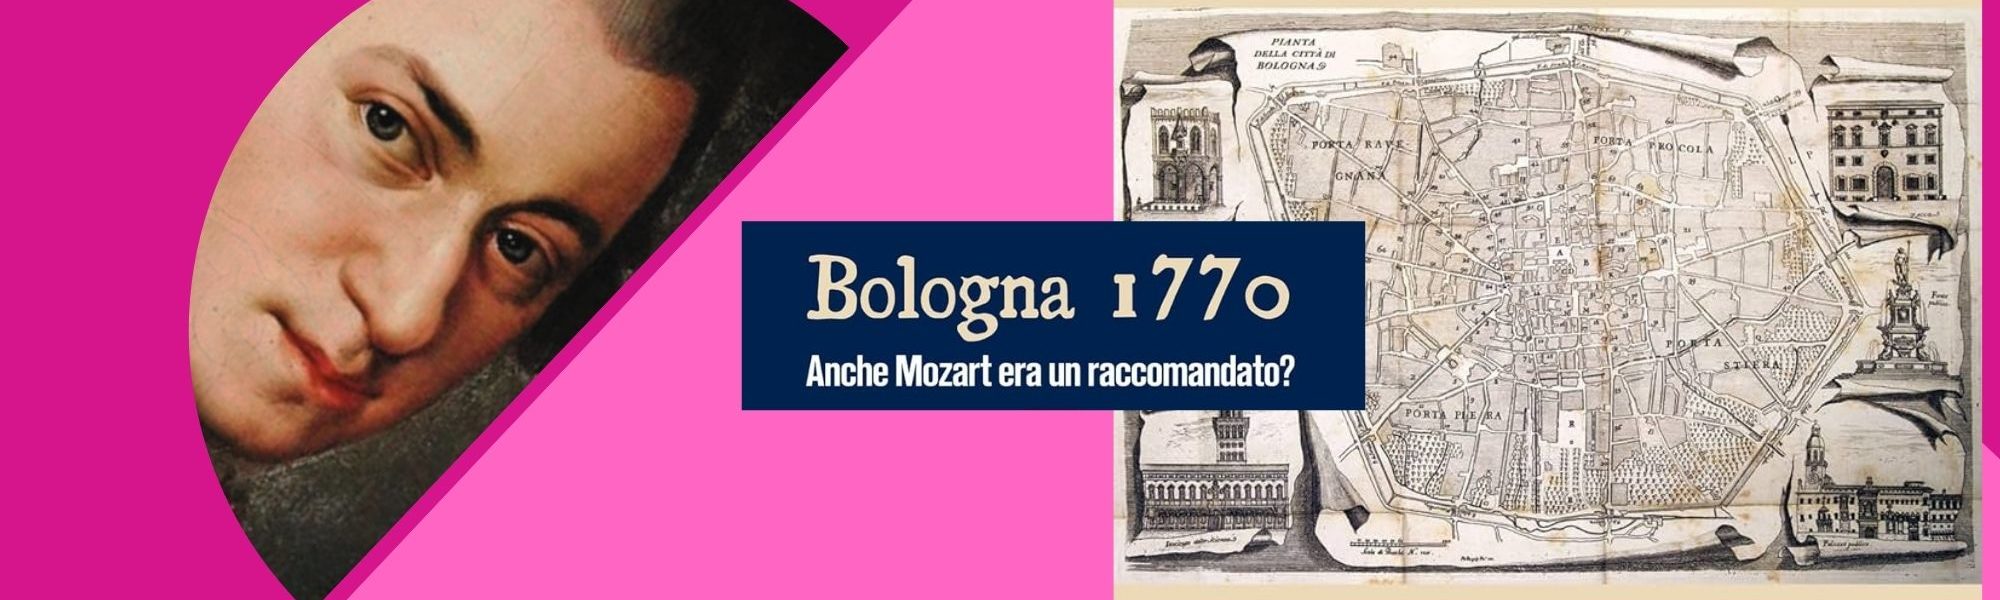 immagine di Mozart e piantina della città di Bologna nel 17700